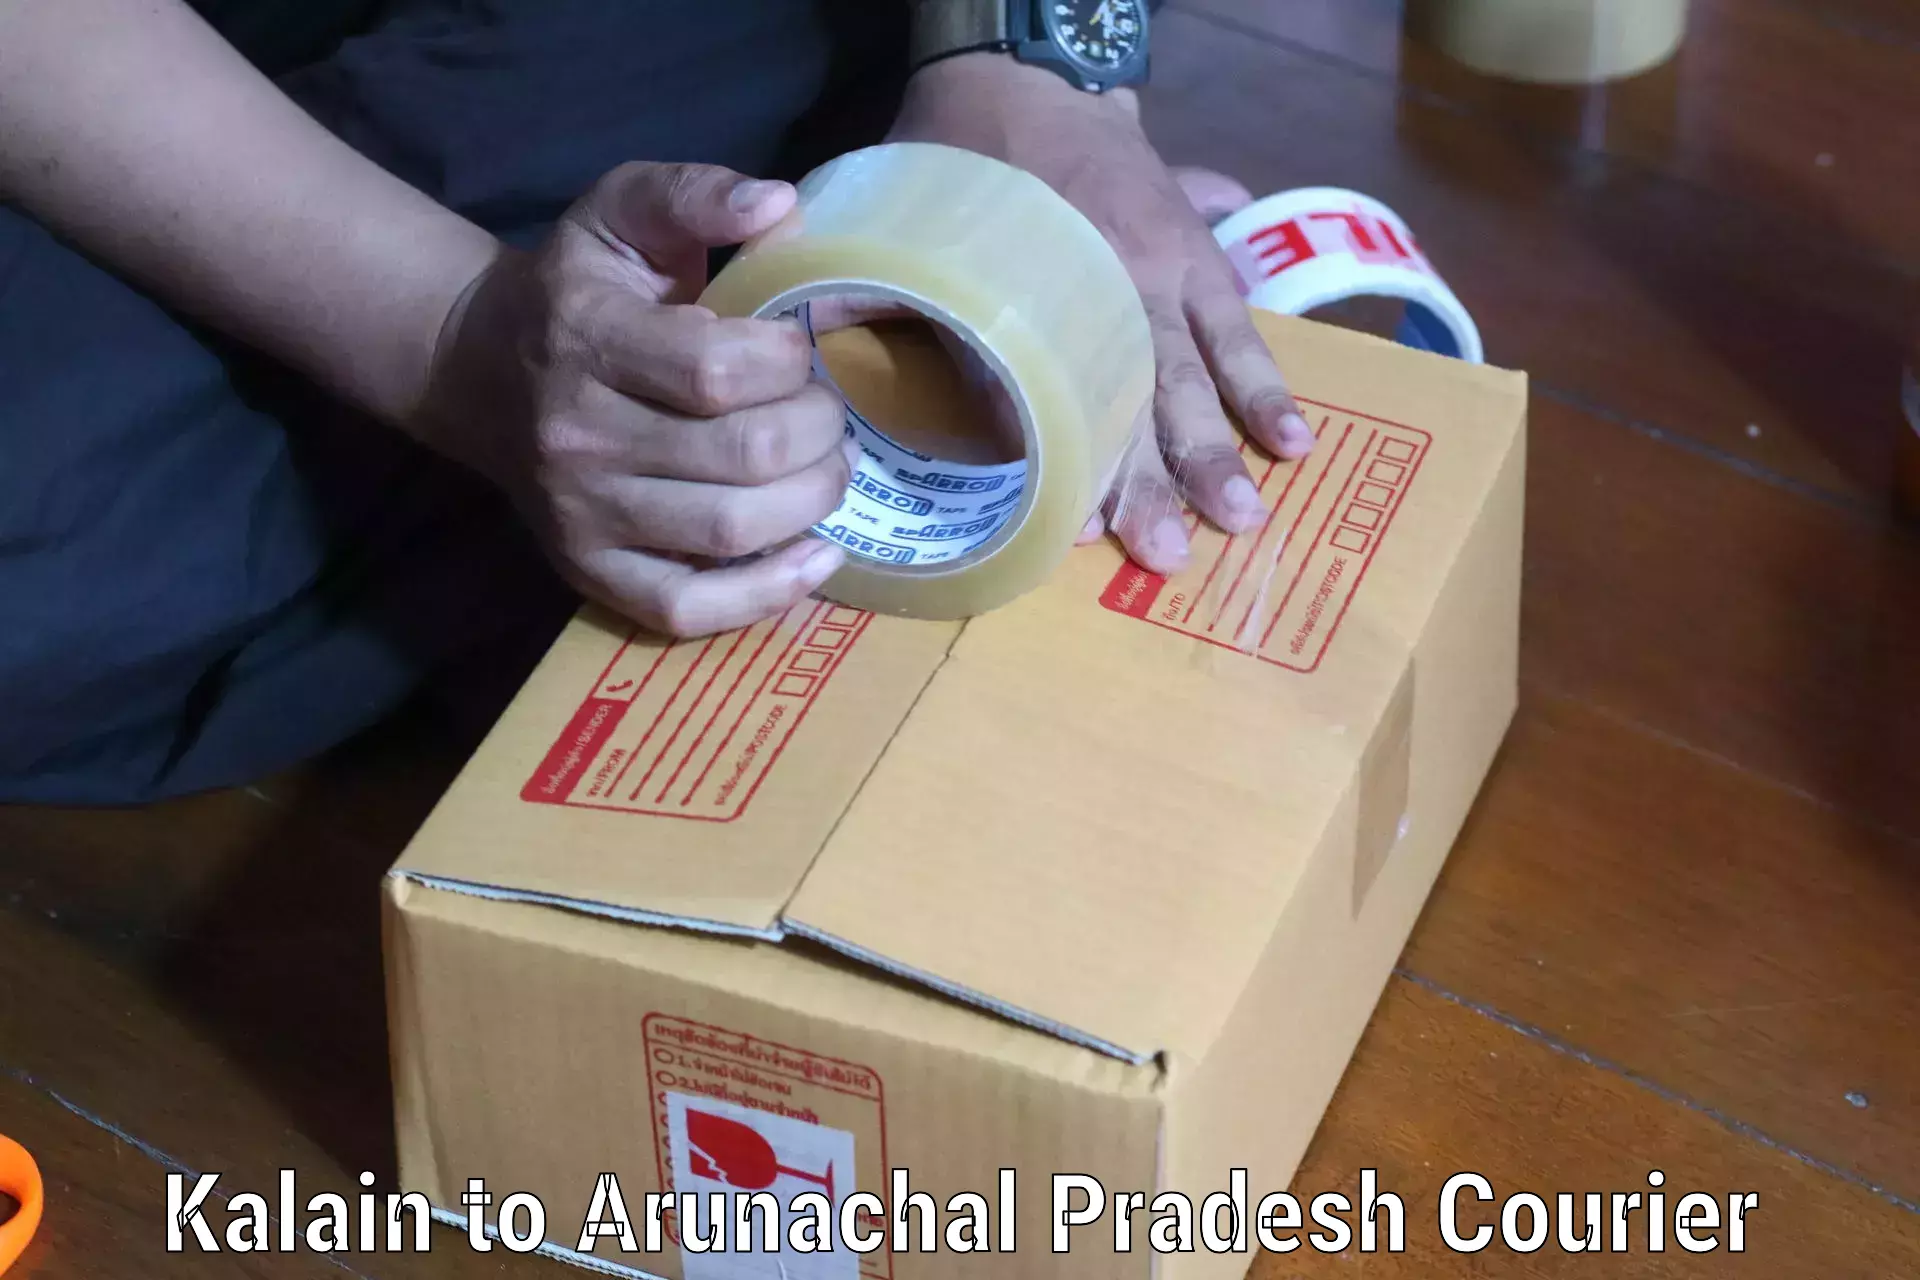 Flexible parcel services Kalain to Pasighat